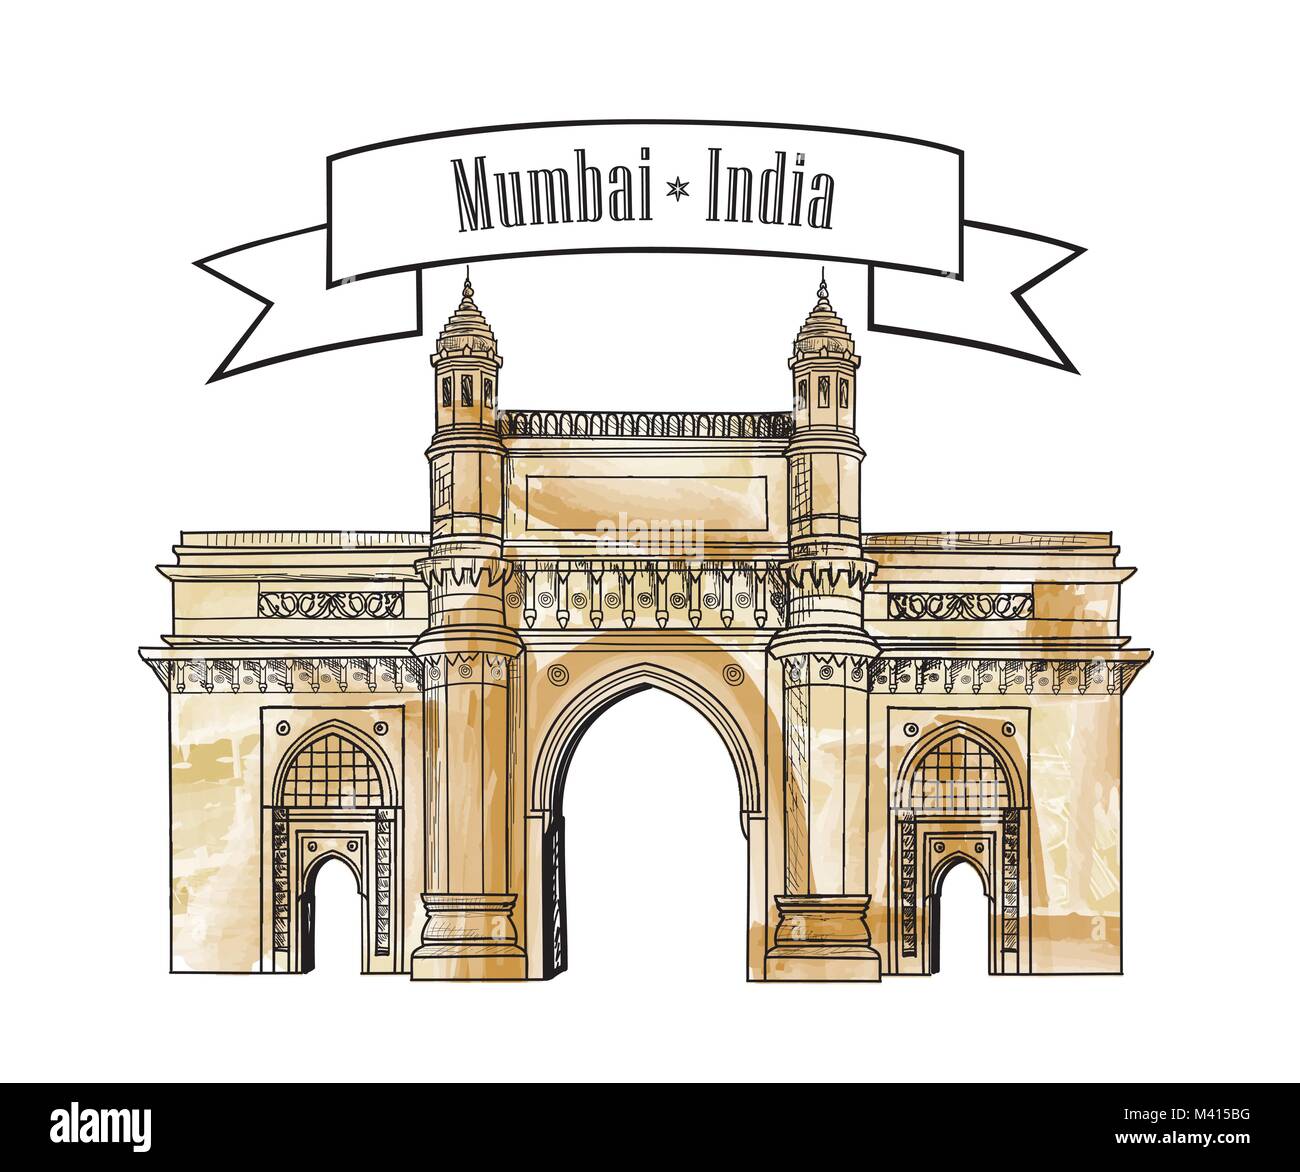 Mumbai city gate way icon, India. Famous indian hand drawn Maharashtra landmark. Travel India background Stock Vector